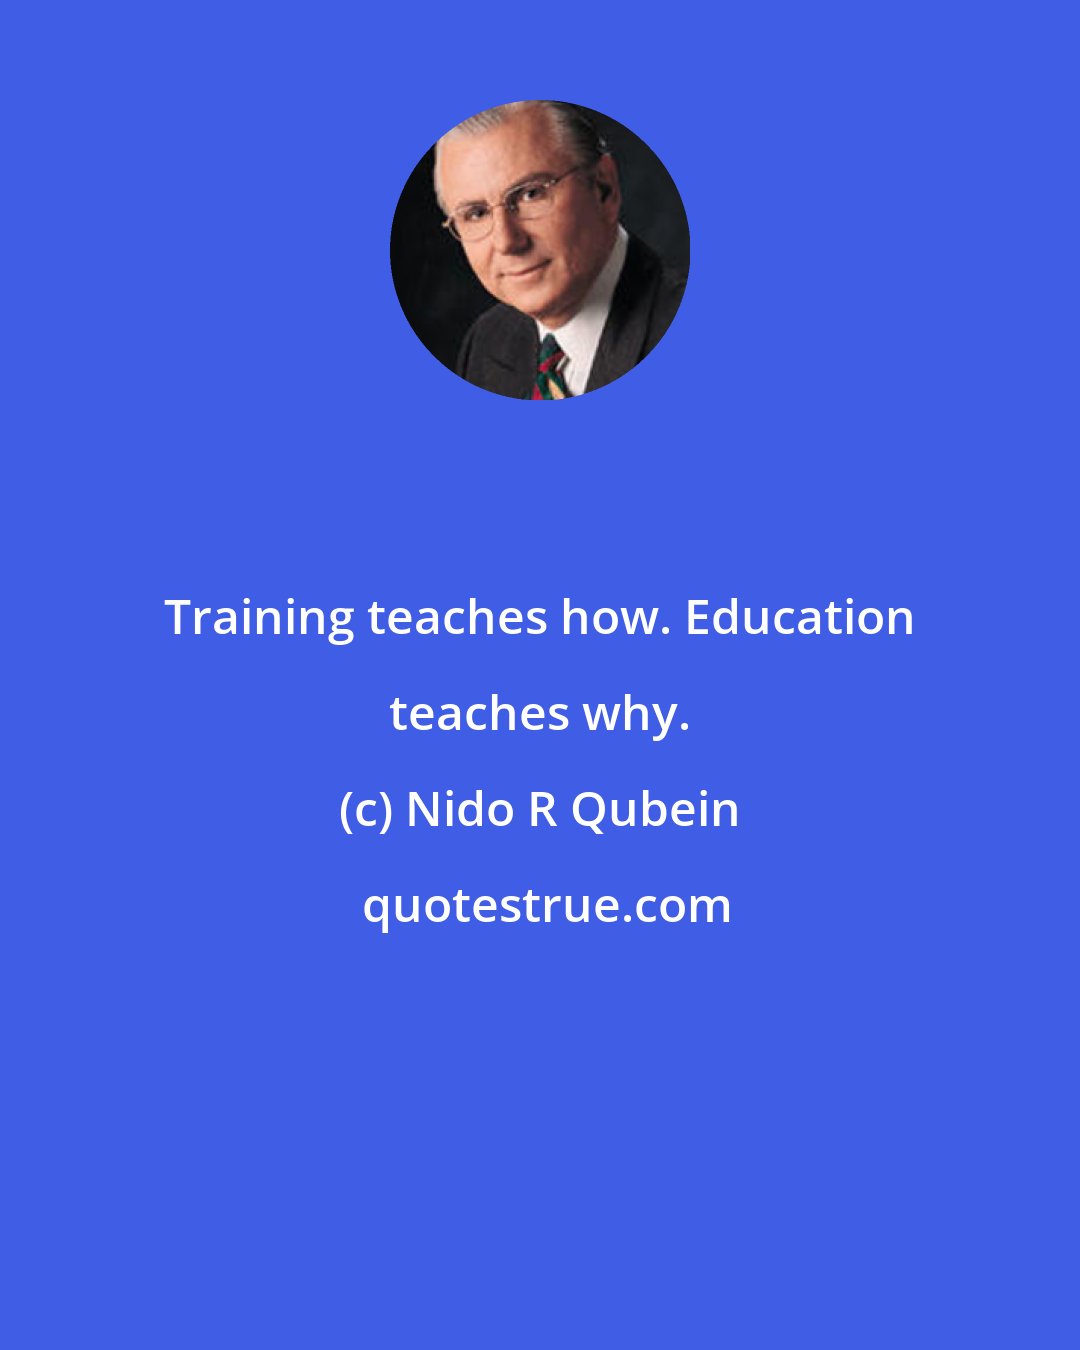 Nido R Qubein: Training teaches how. Education teaches why.